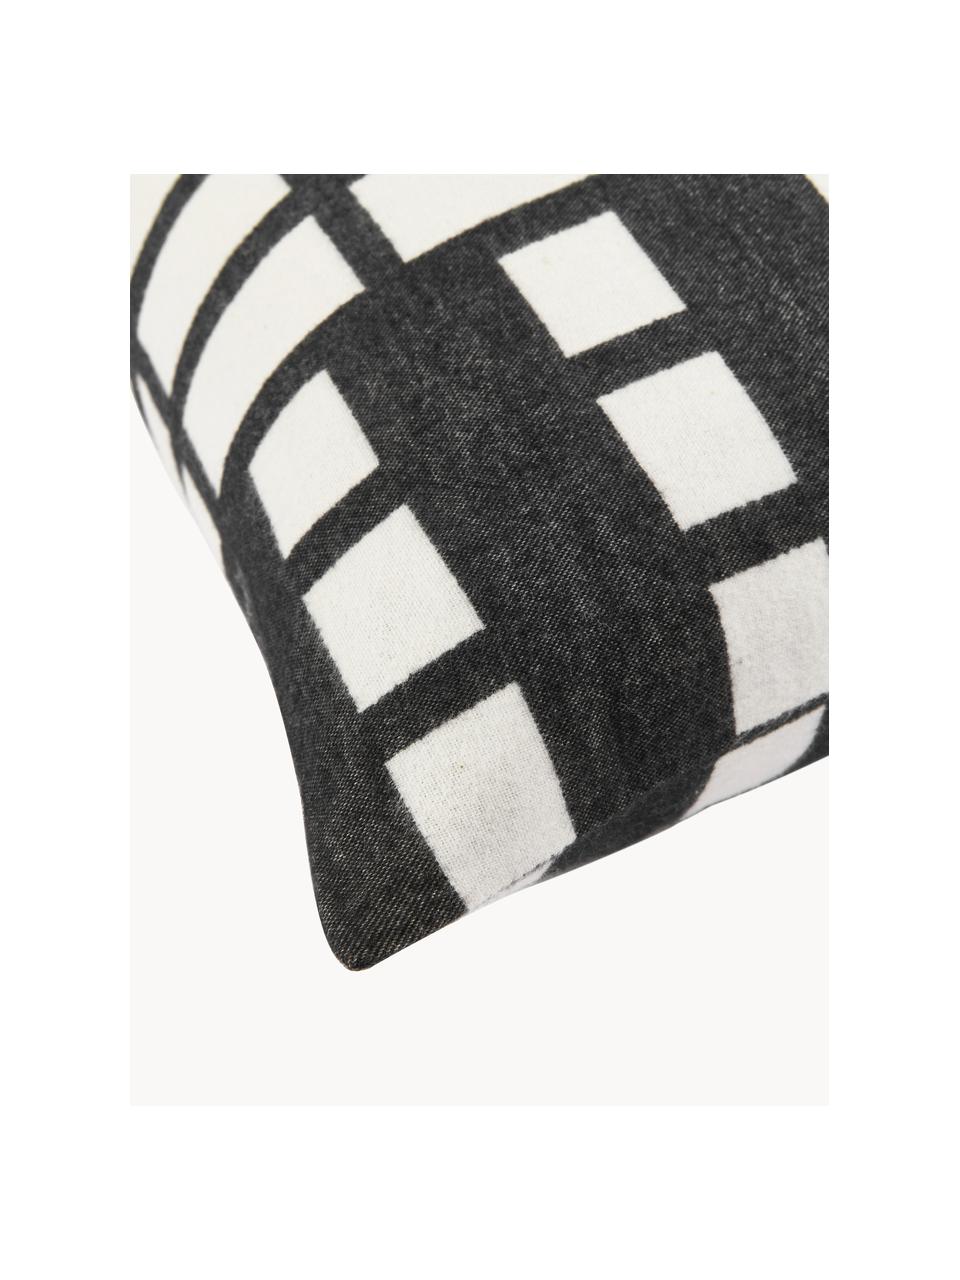 Poszewka na poduszkę z bawełny Contemporary, Bawełna, Złamana biel, antracytowy, S 60 x D 60 cm